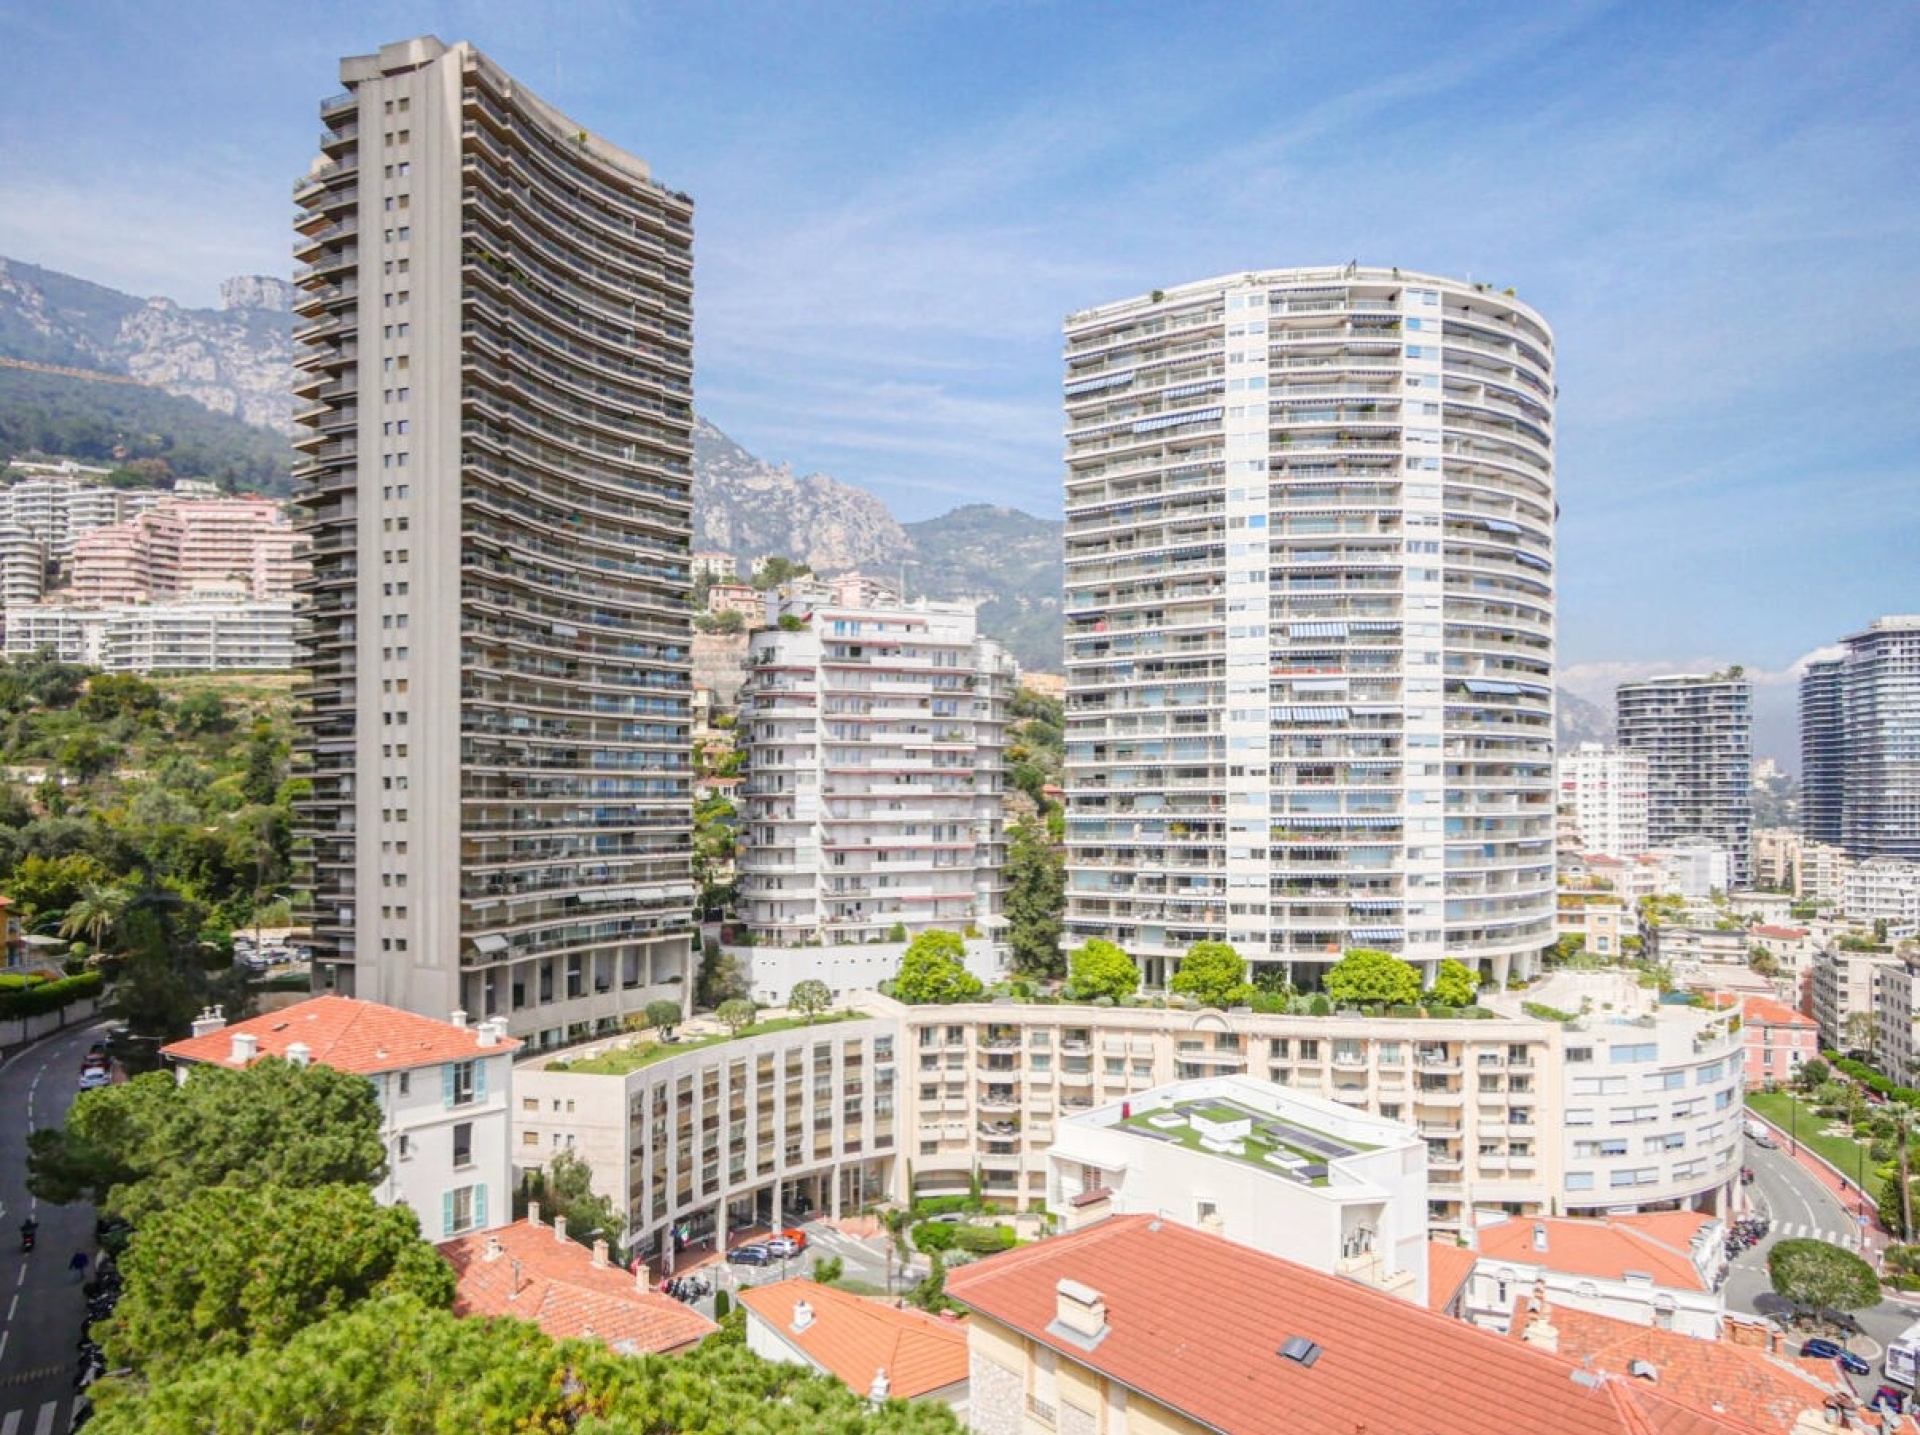 Dotta Appartement de 4 pieces a vendre - ANNONCIADE - La Rousse - Monaco - imgimage6